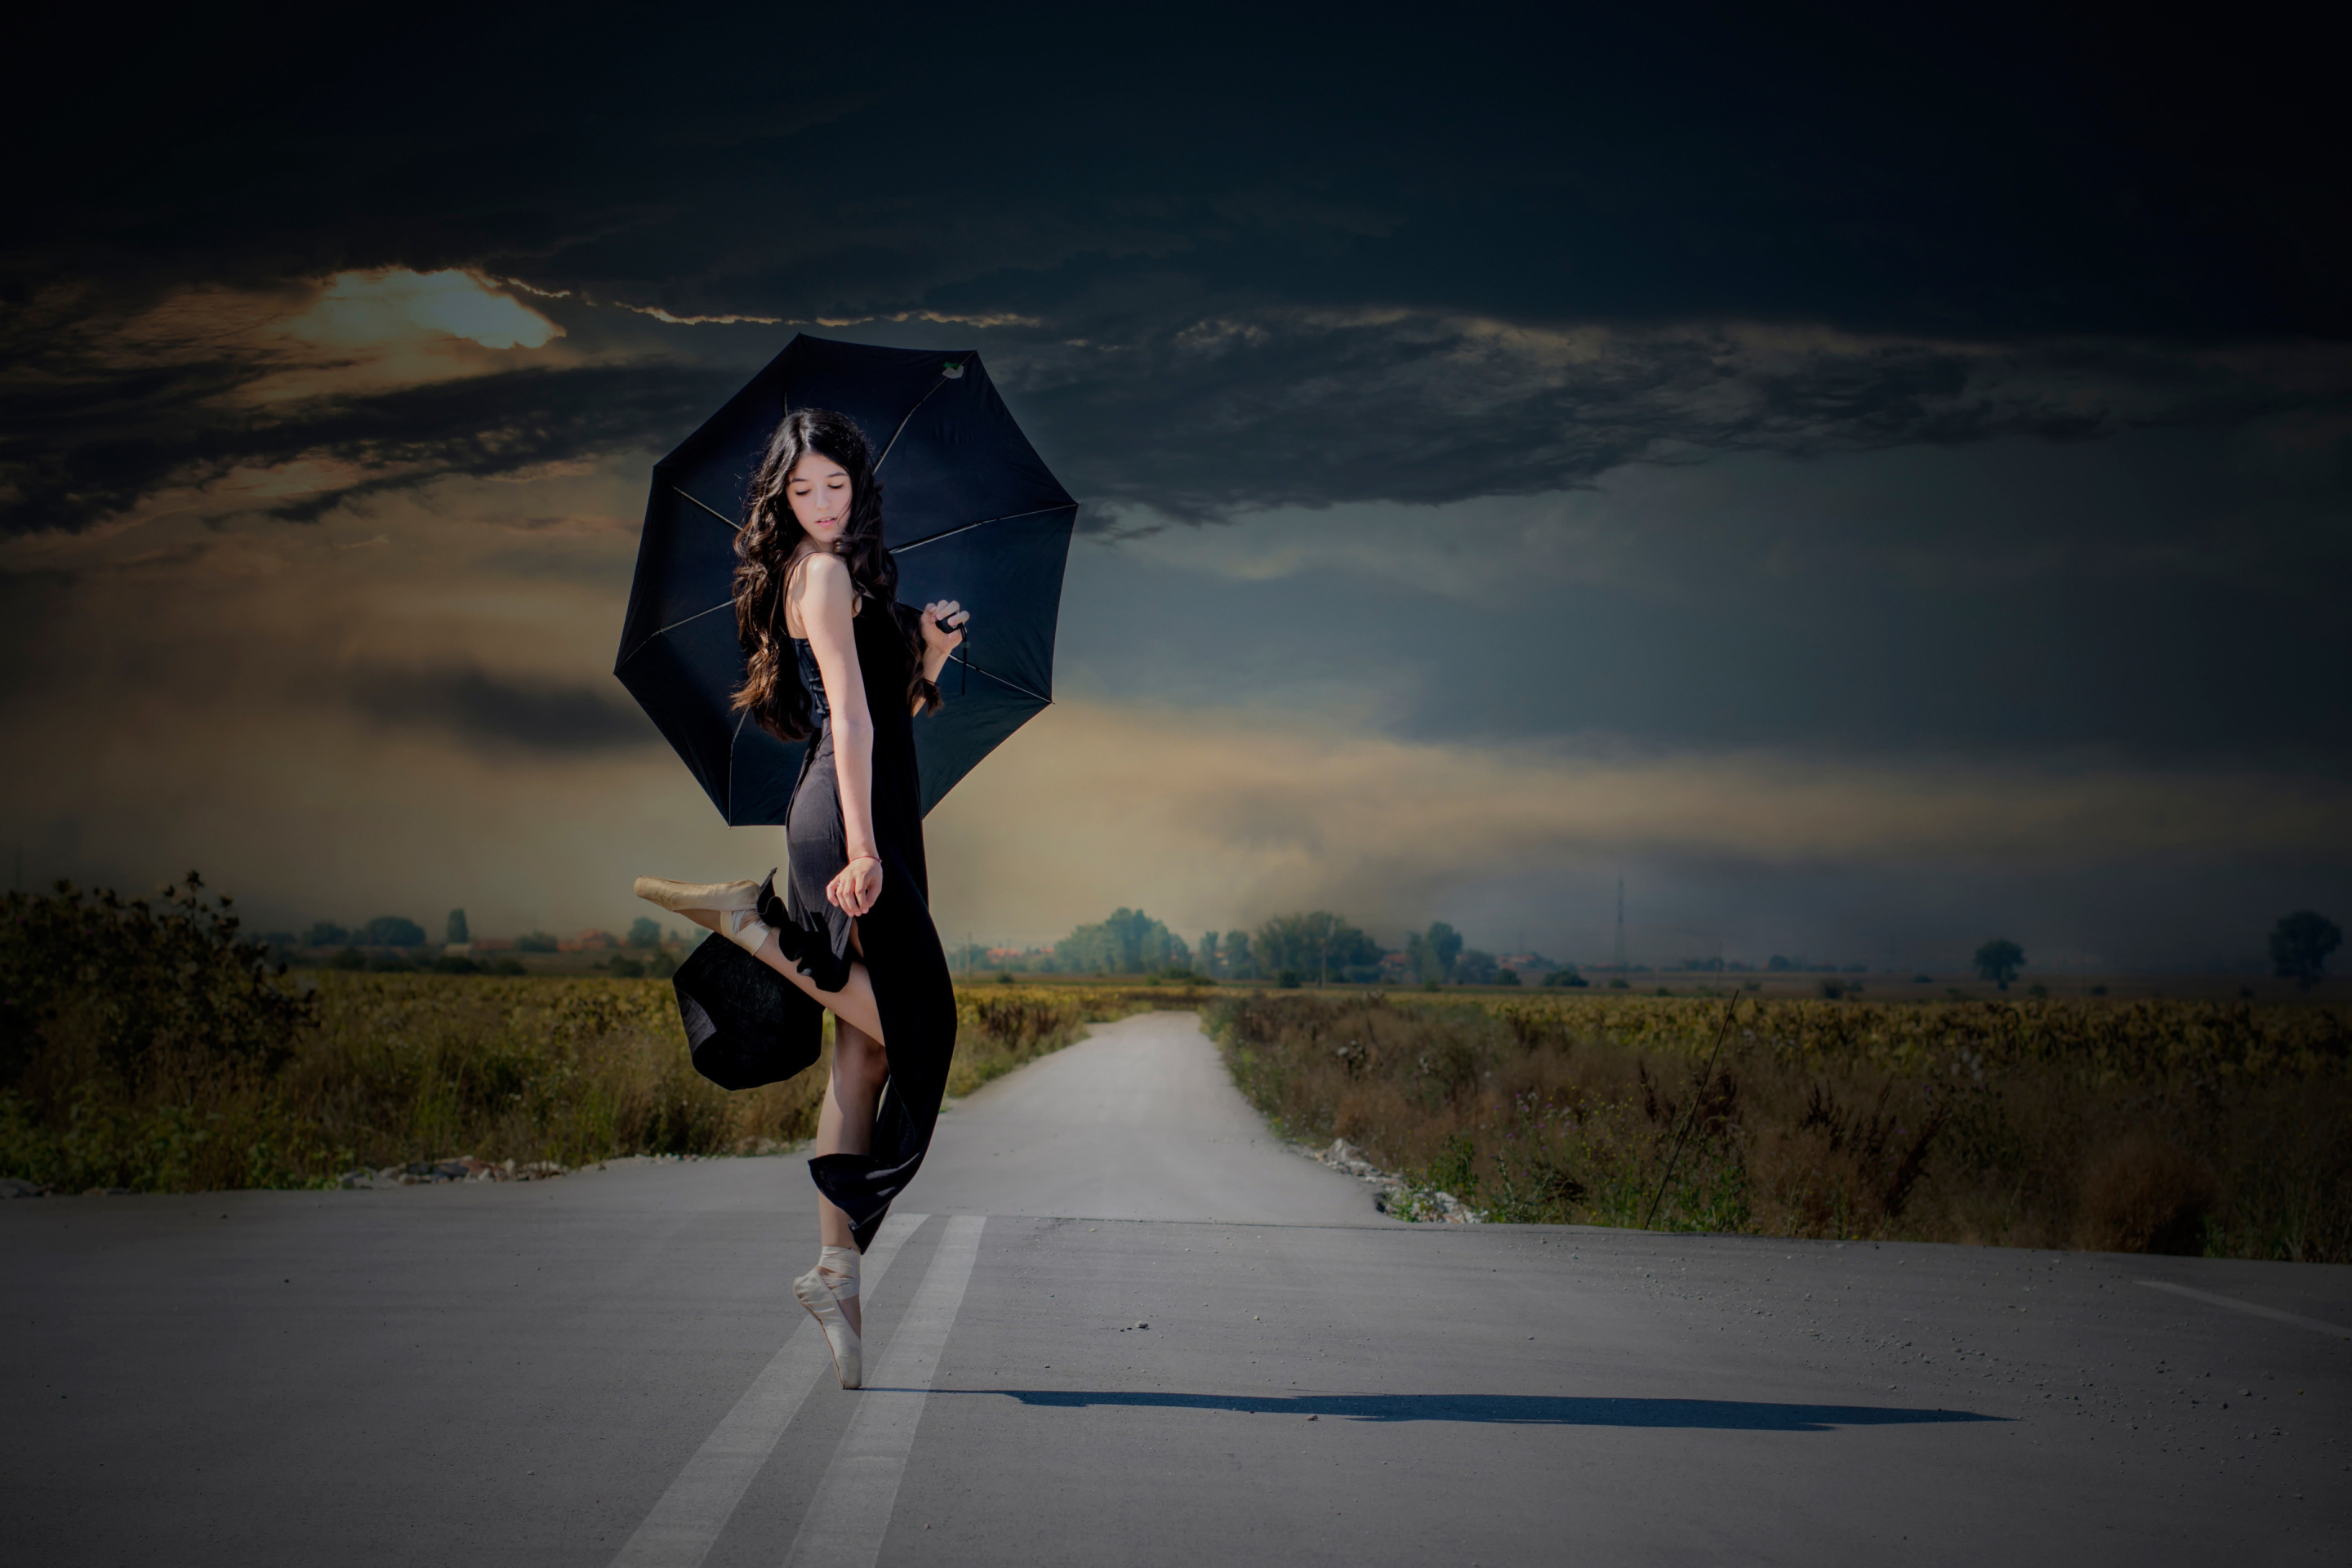 Обои Ballerina with black umbrella 2880x1920